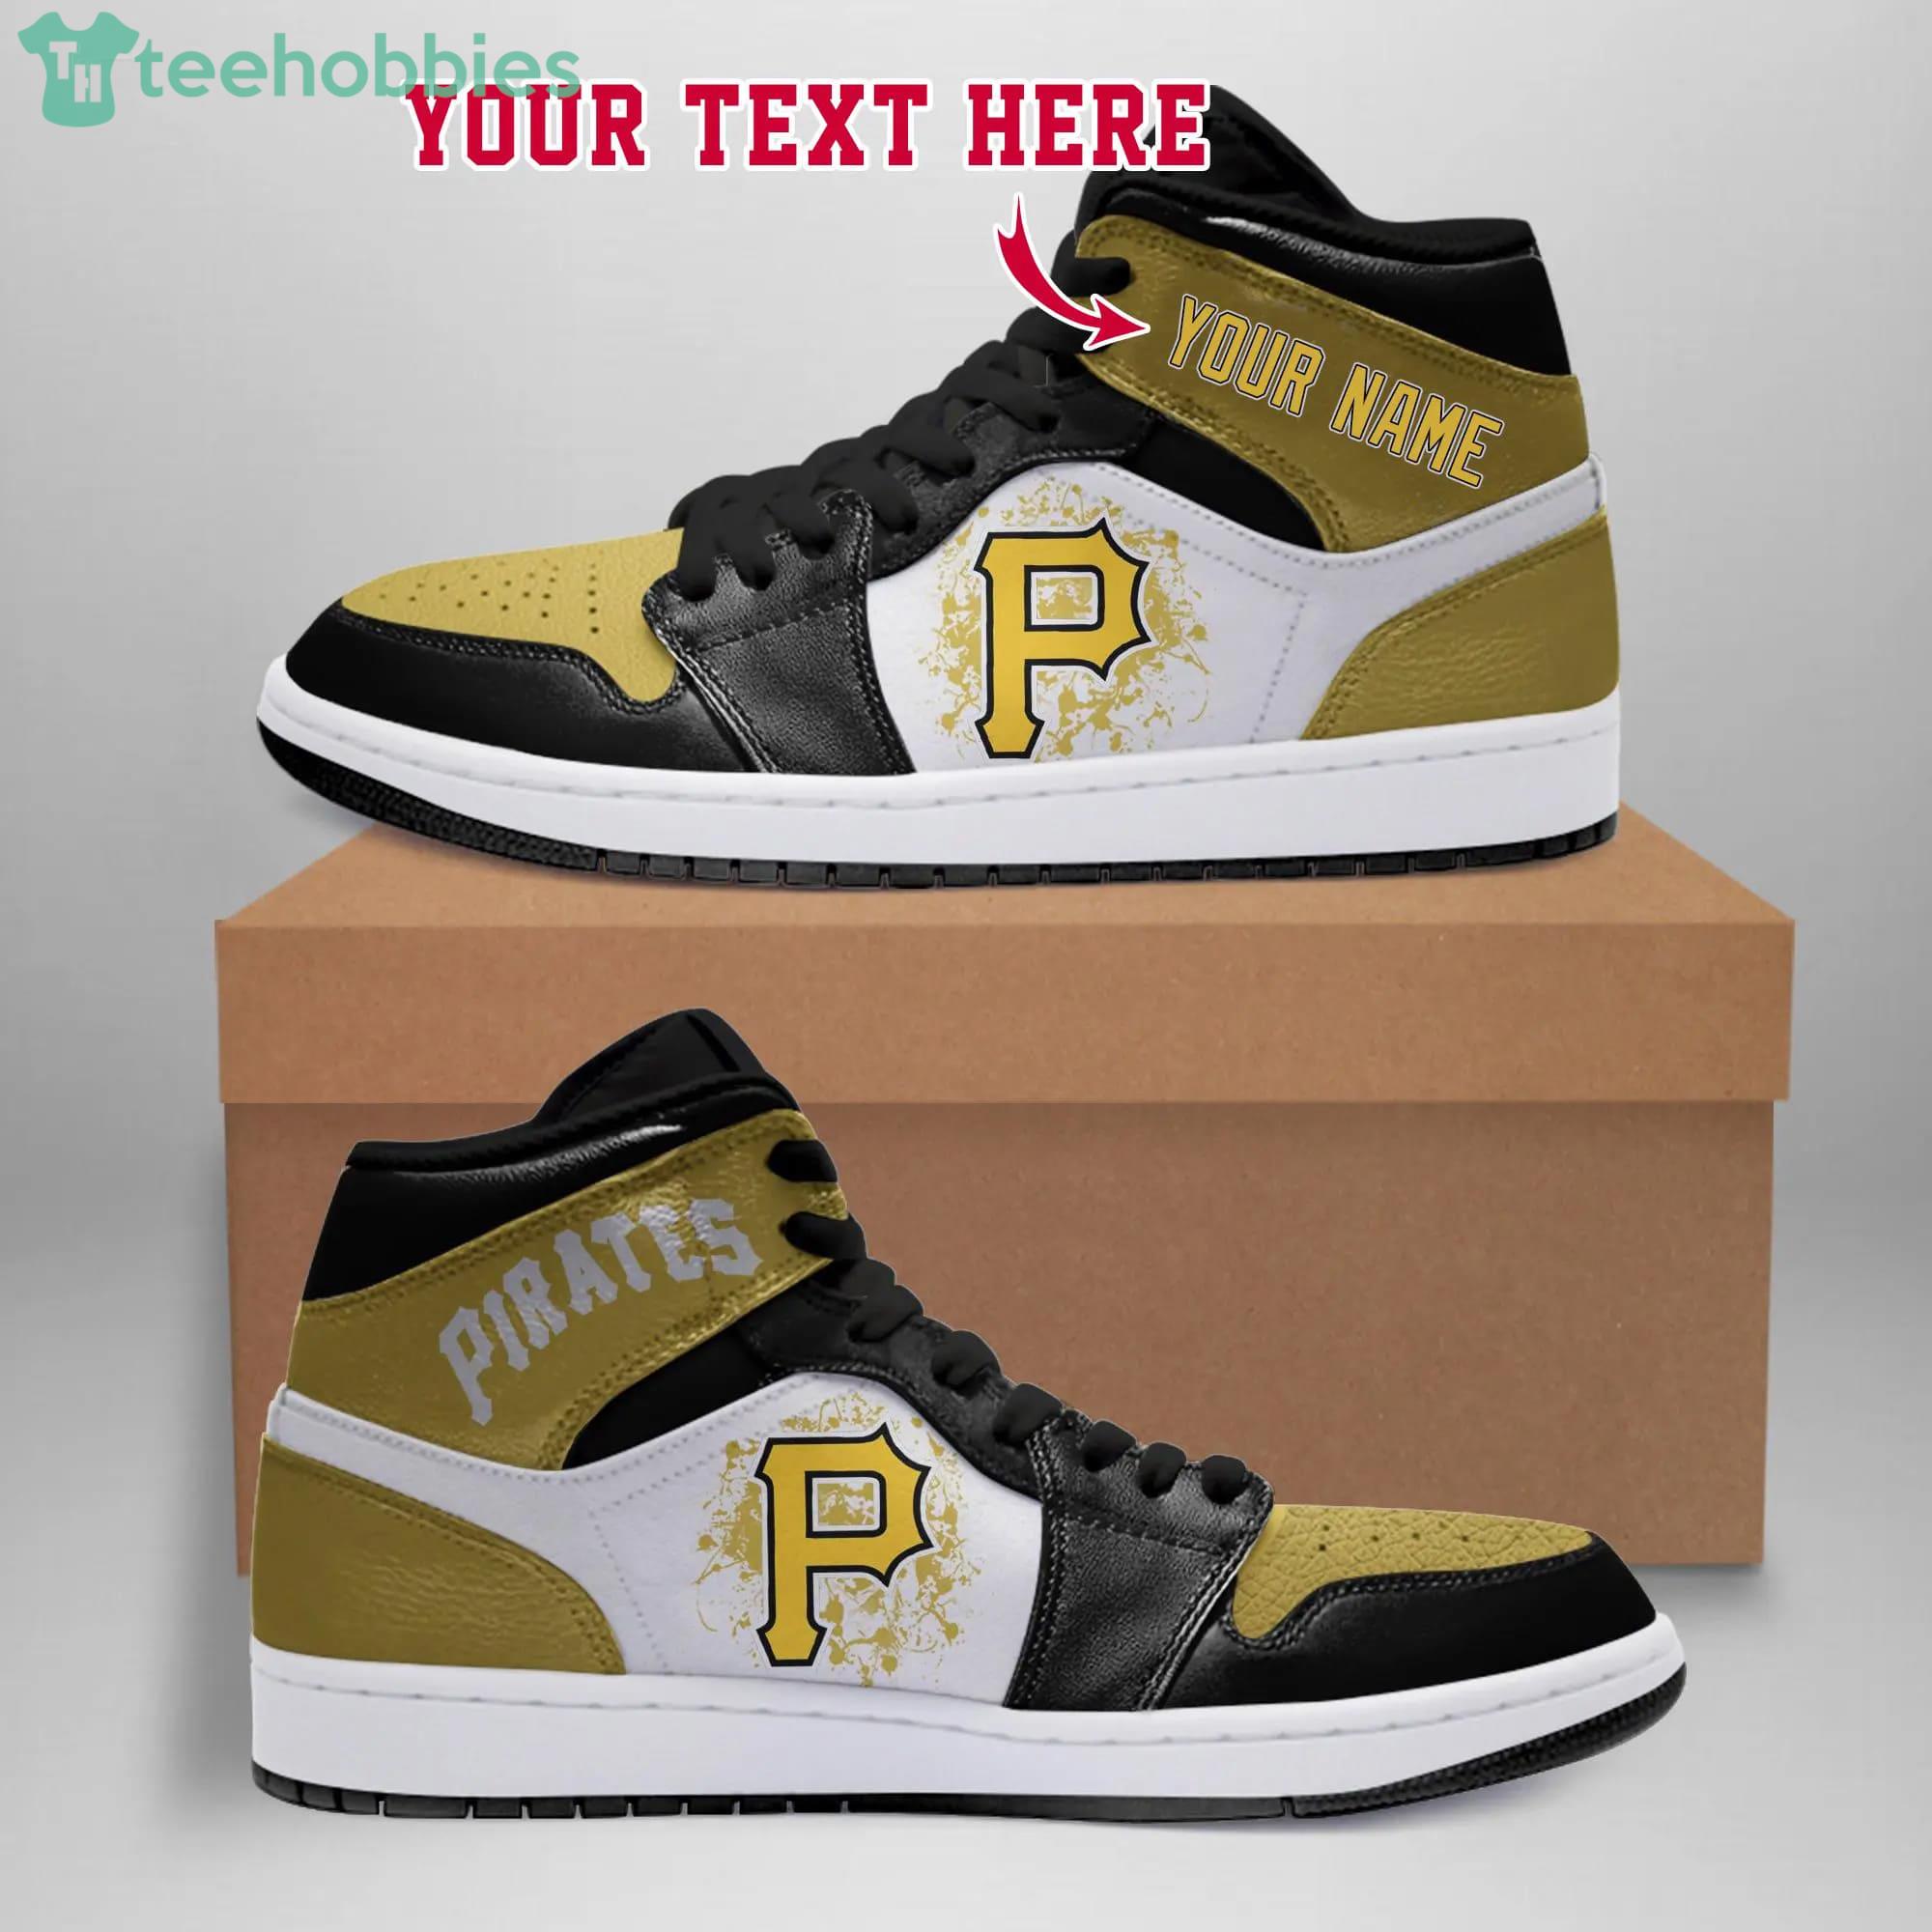 MLB Pittsburgh Pirates Air Jordan 13 Custom Name Shoes Sneaker For Fans